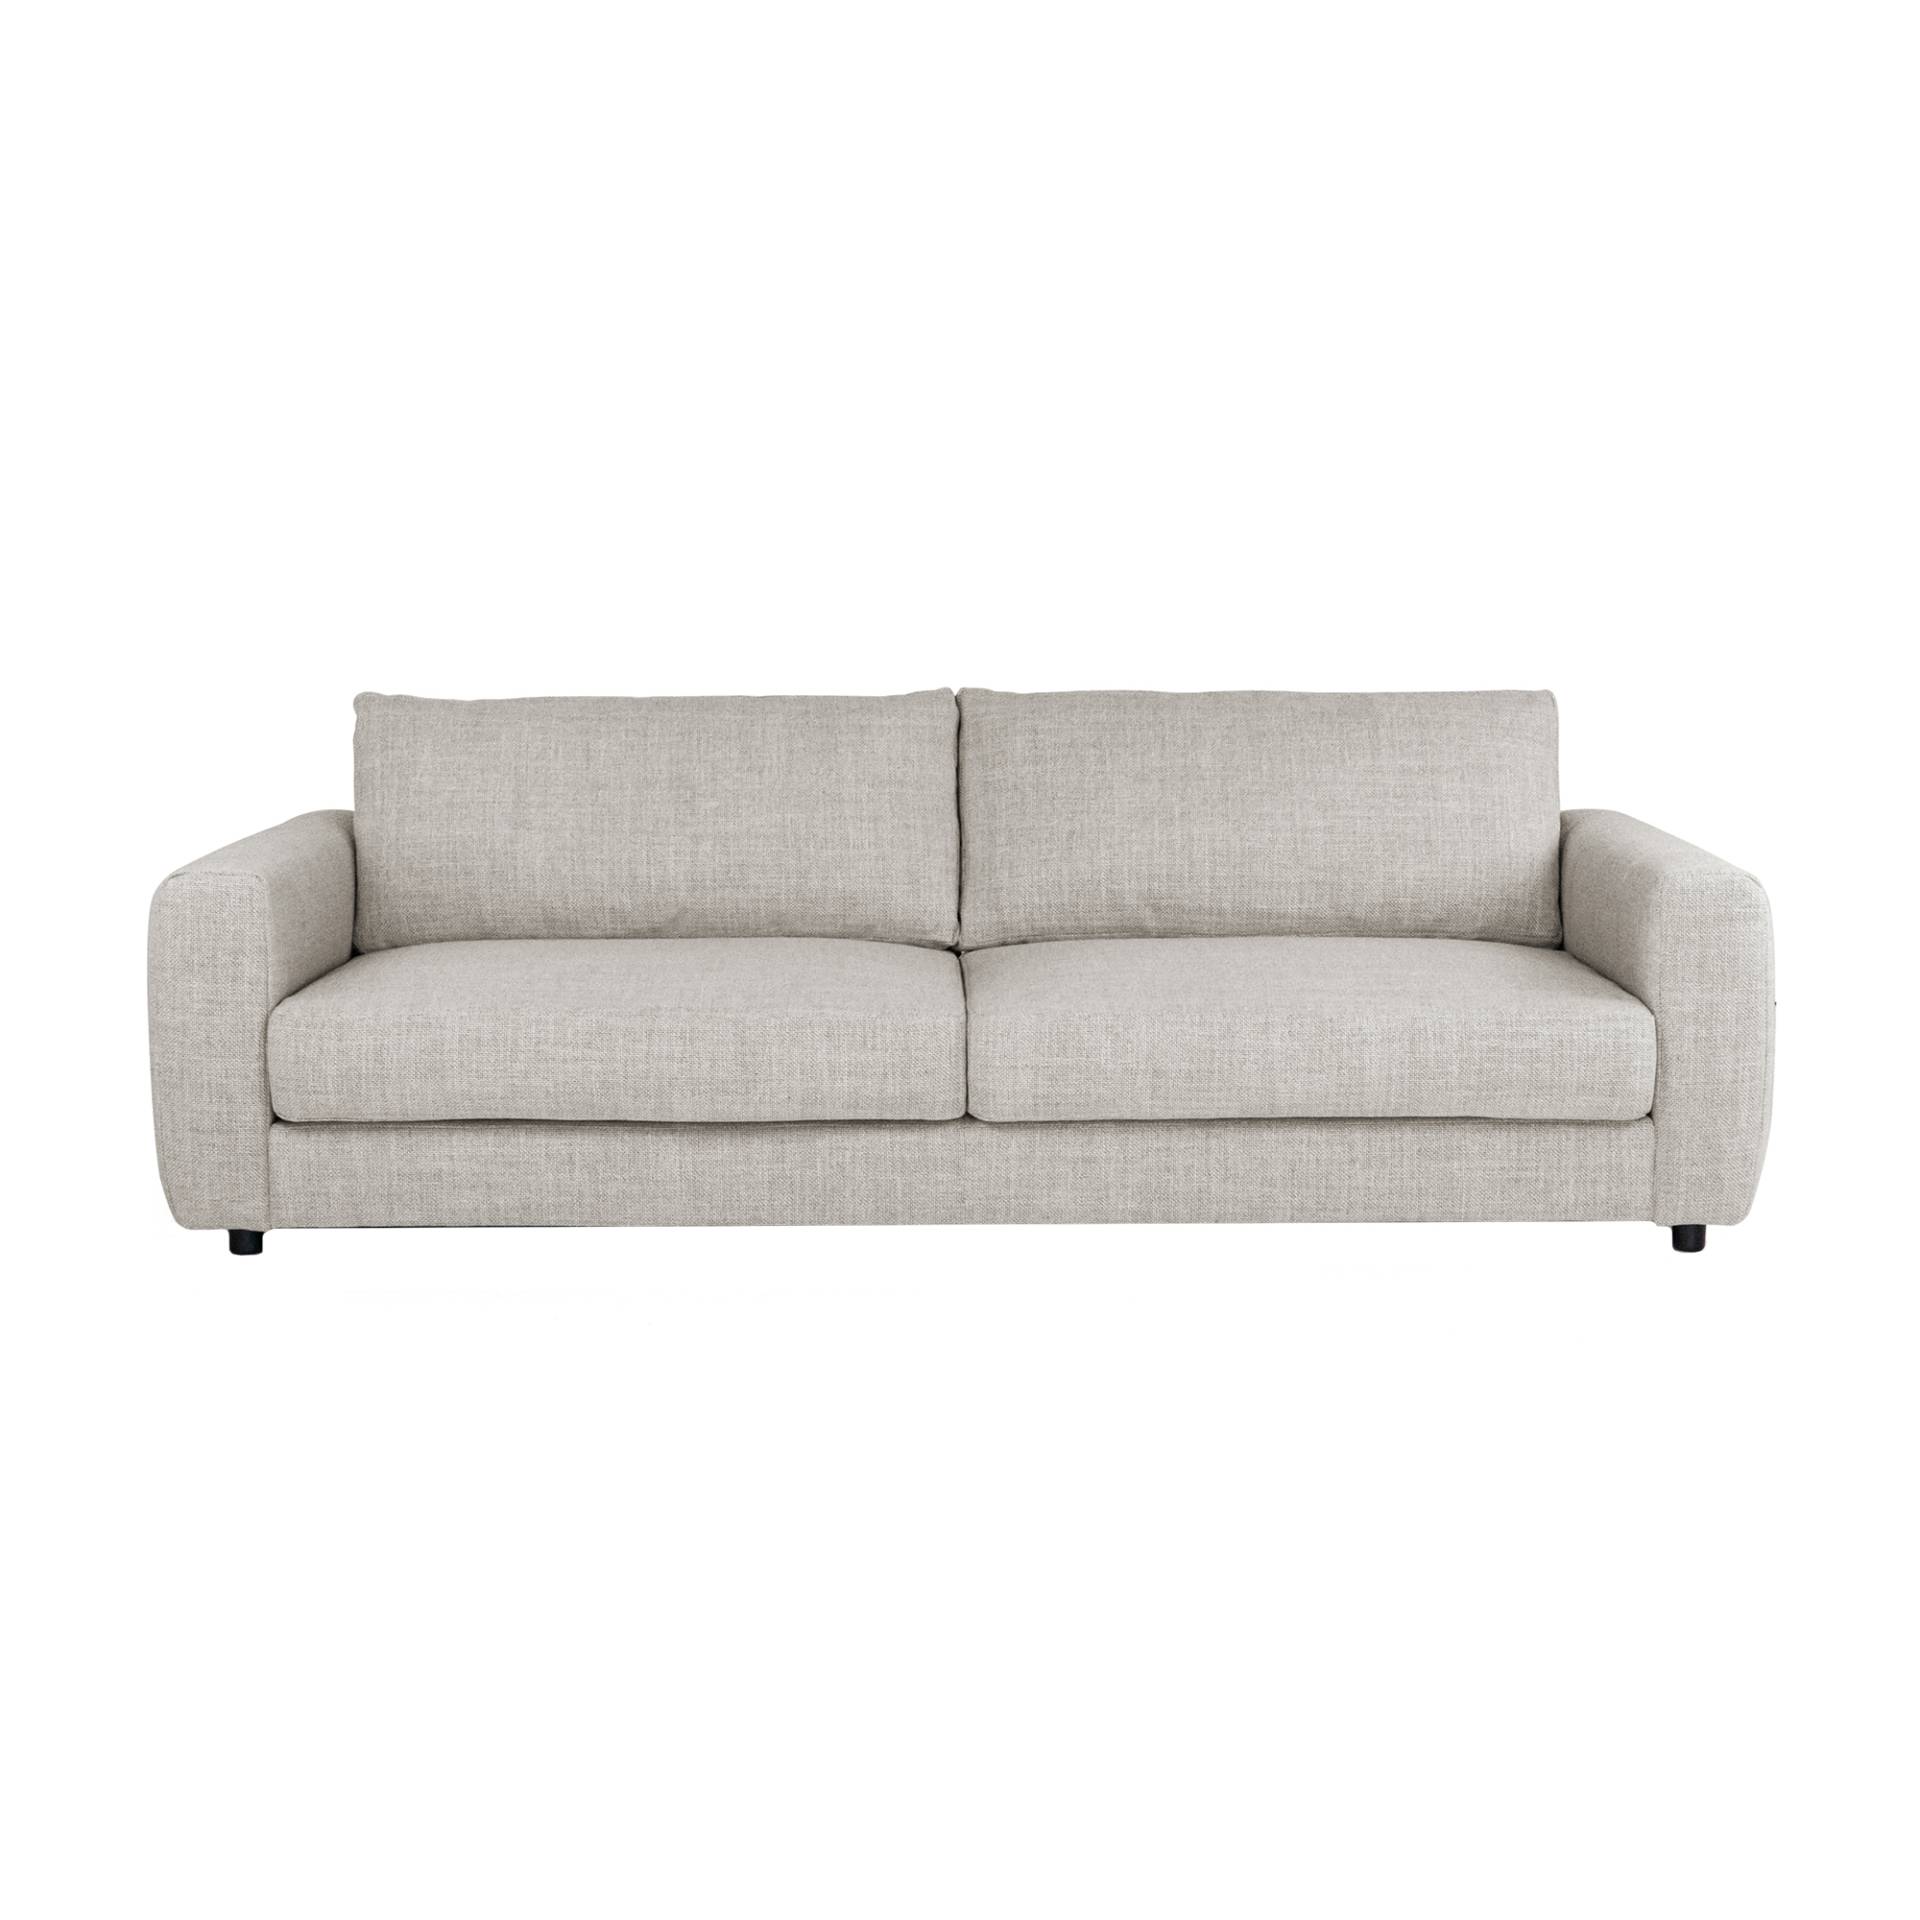 Nuuck - Bente 3-Sitzer Sofa - beige/Melina Simply 1244 (100% Polyester)/LxBxH 230x100x79cm/mit Kunststoffgleitern und Kissen von Nuuck